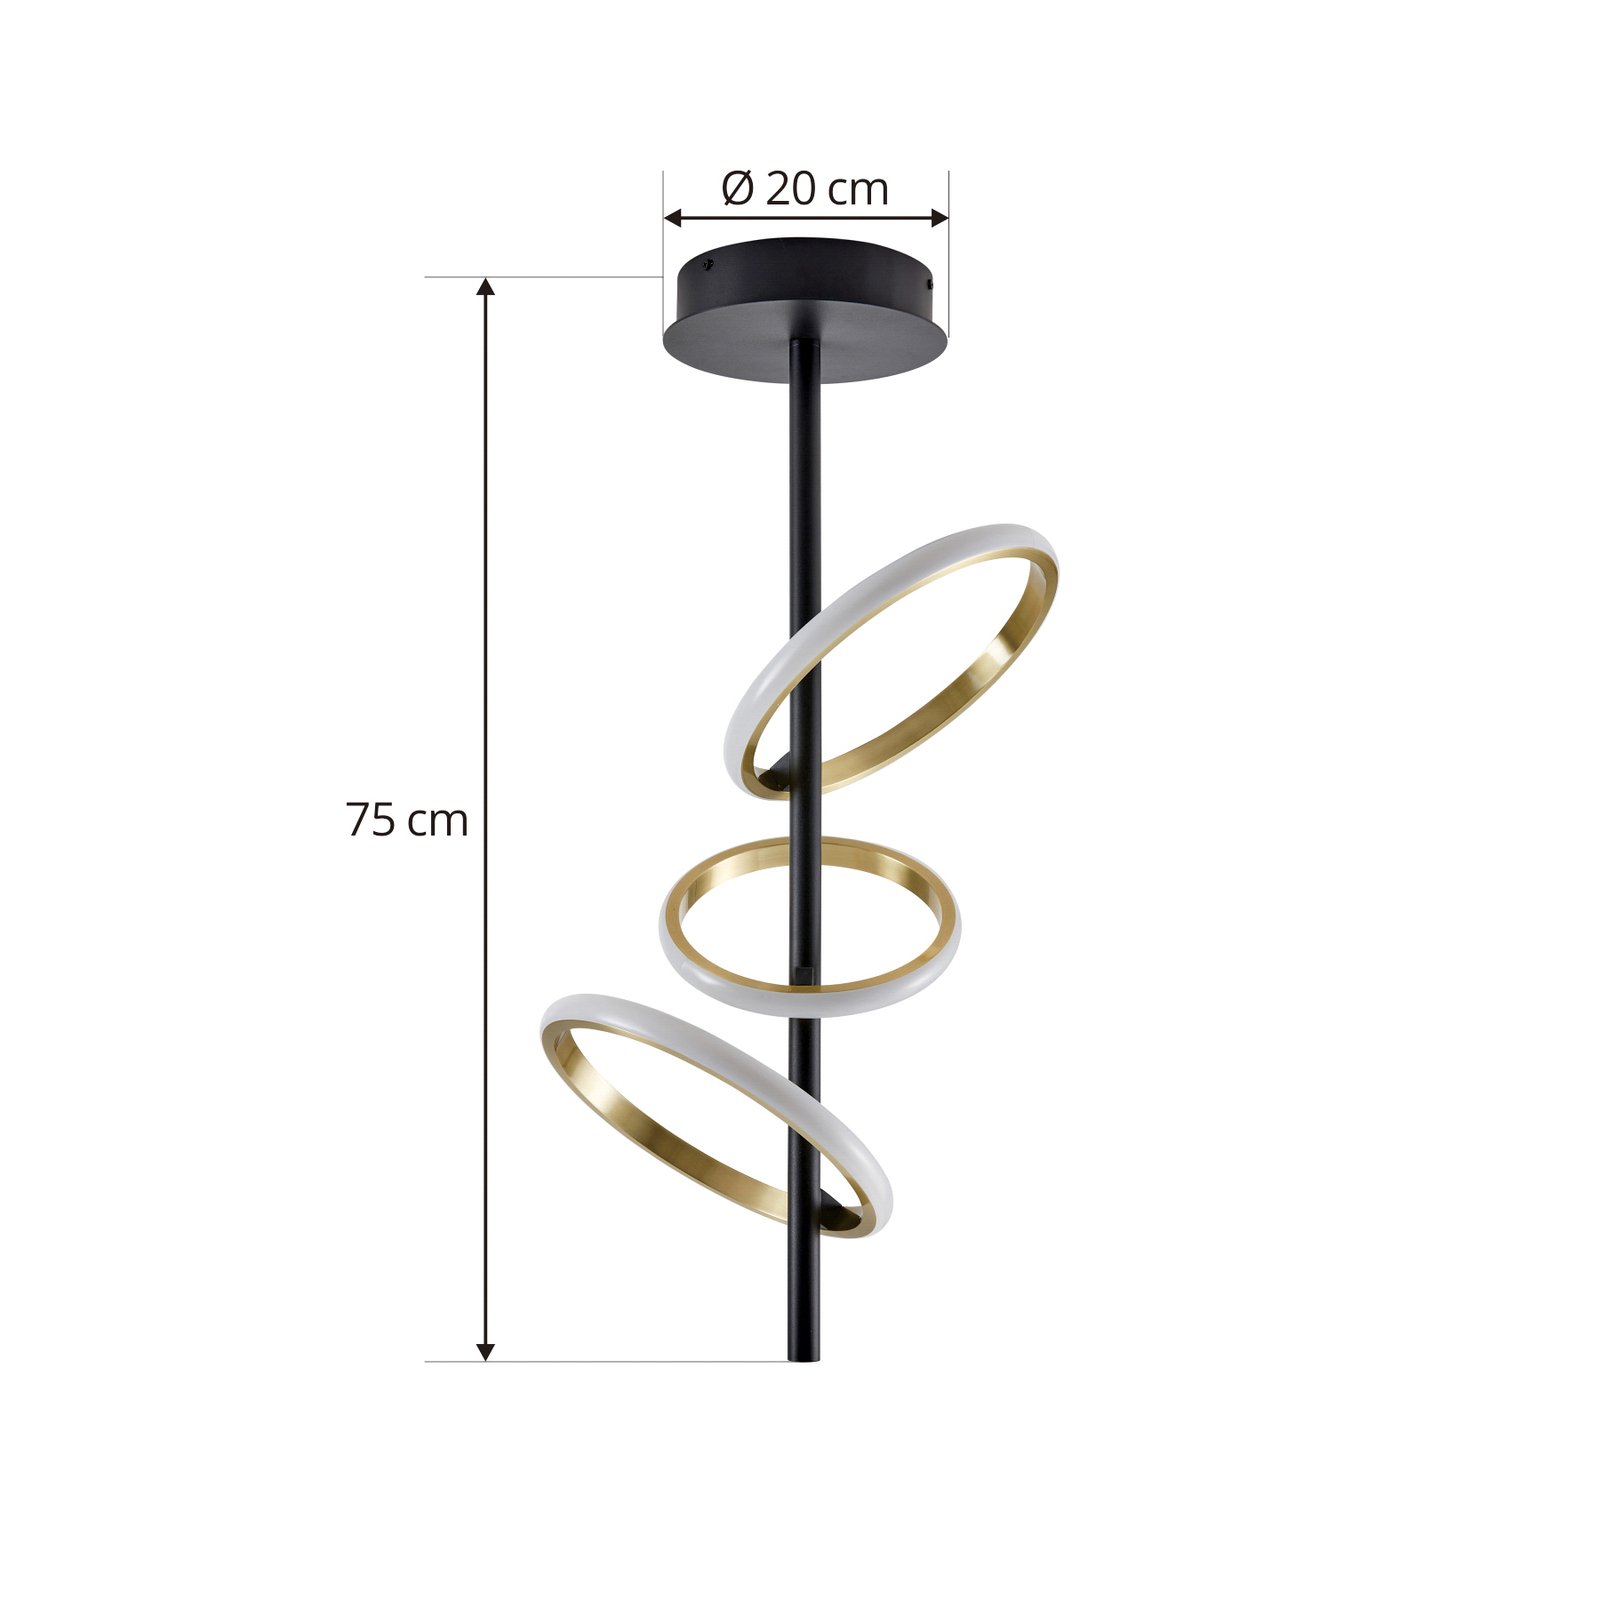 Lucande LED mennyezeti lámpa Madu, fekete, fém, 75 cm magas